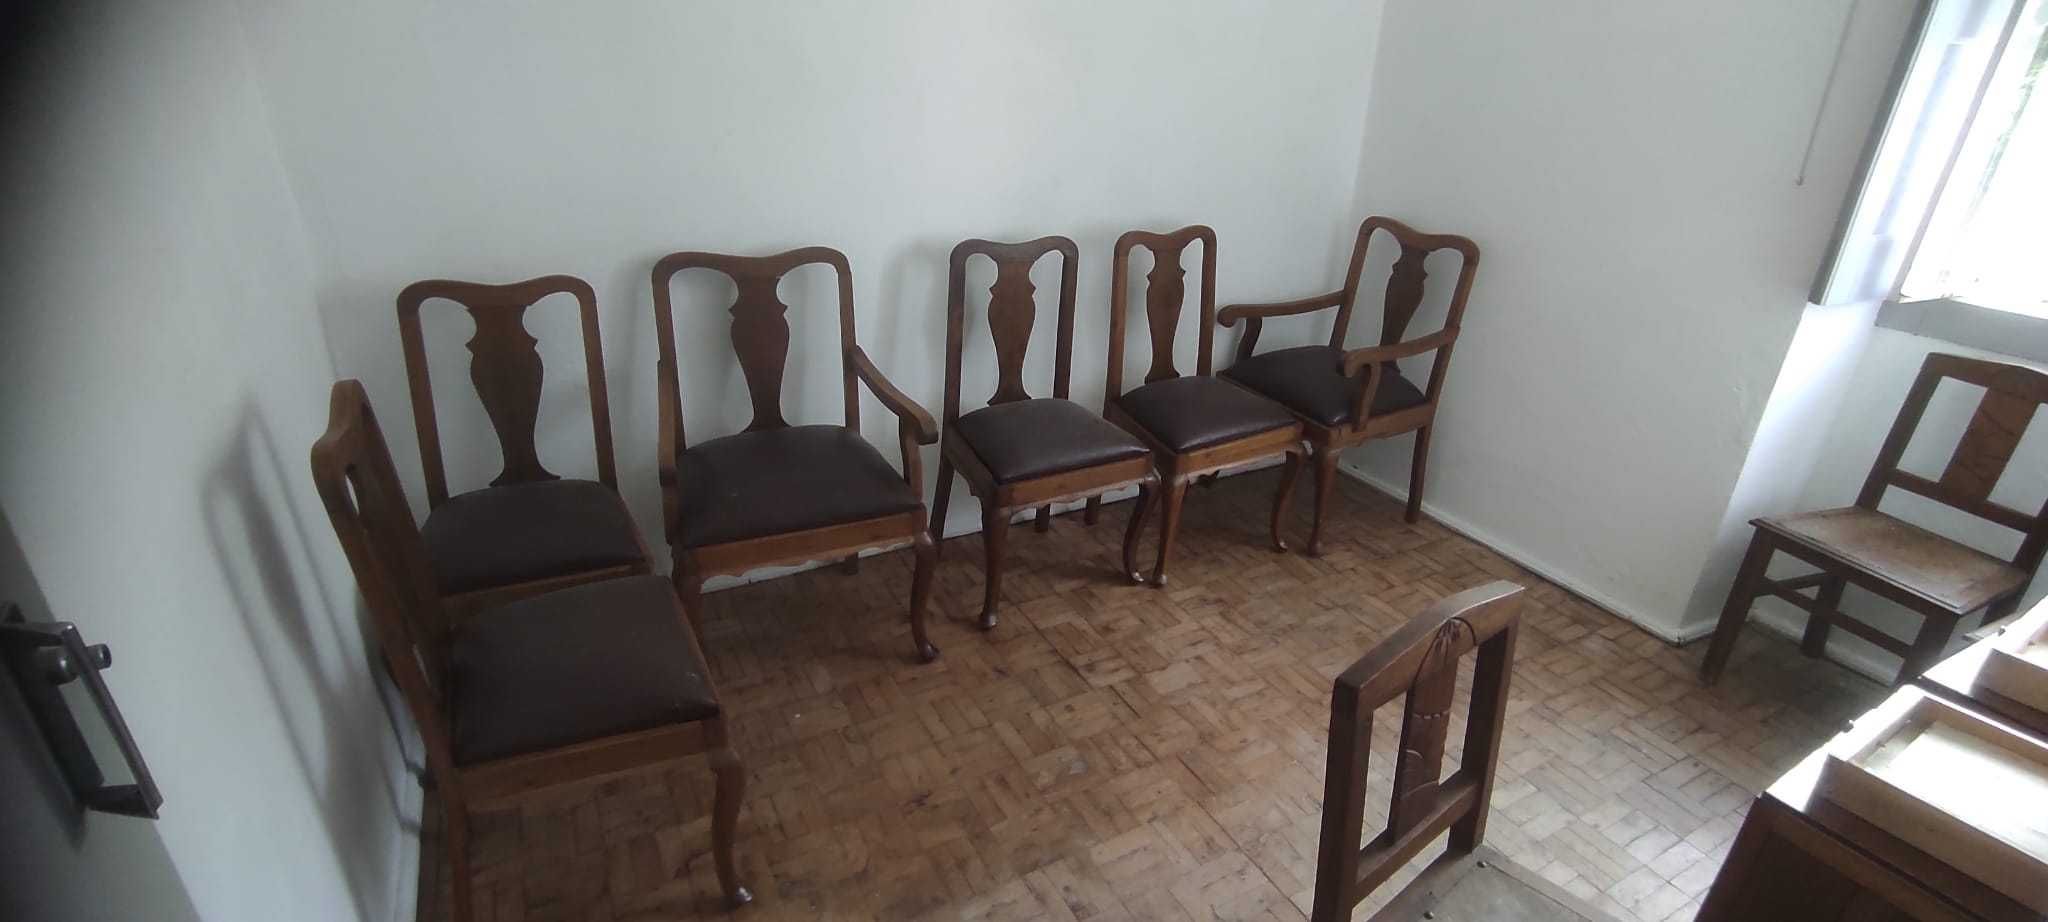 Mesa e Cadeiras Vintage